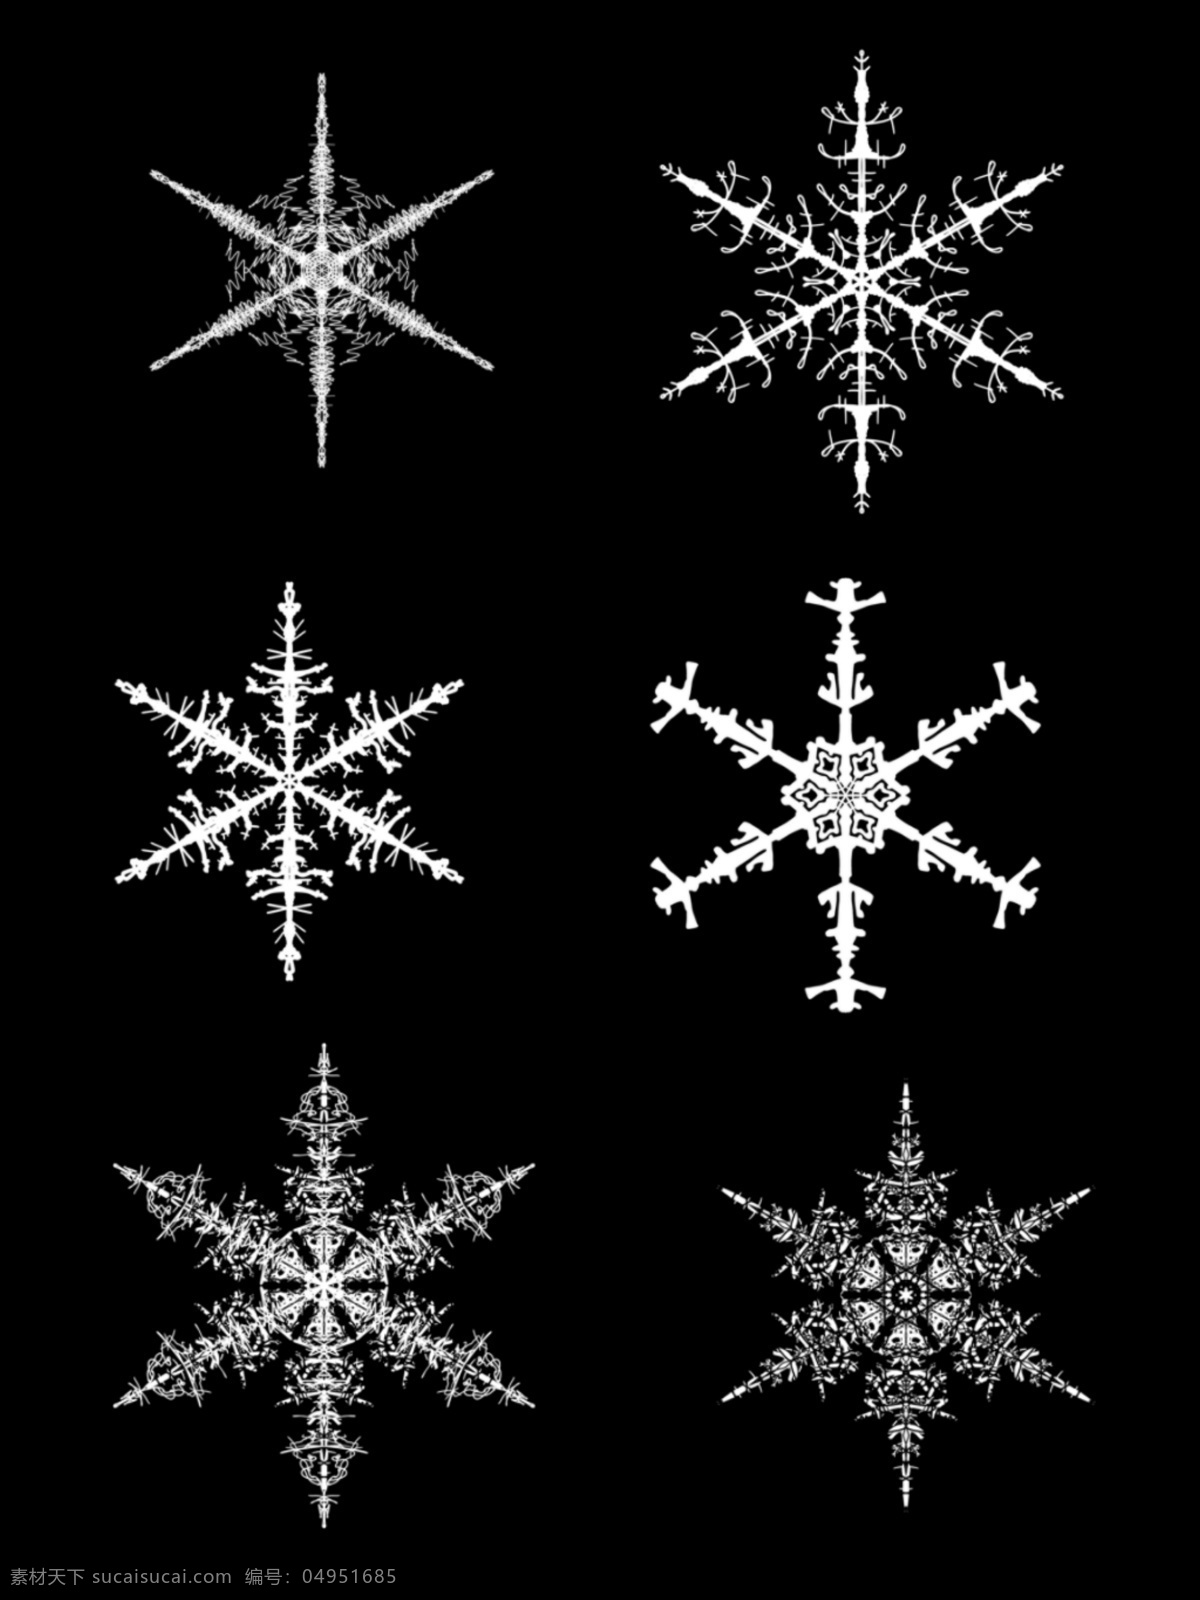 仿真 冰晶 冬季 雪花 图 装饰 元素 雪花图 装饰元素 仿真冰晶